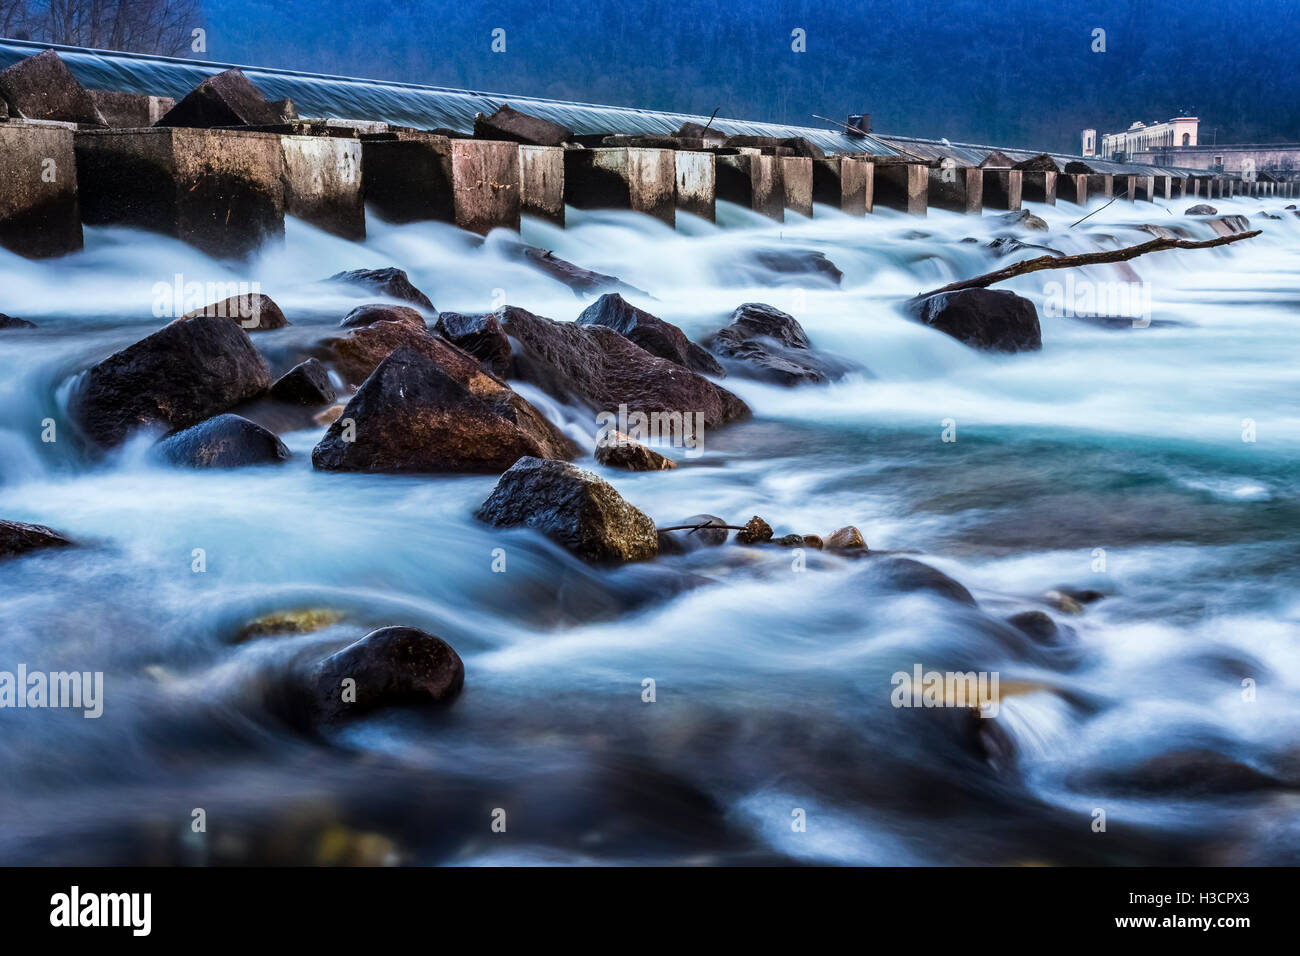 La rivière Tessin coule sous le Panperduto barrage, Somma Lombardo, Province de Varèse, Lombardie, Italie. Banque D'Images